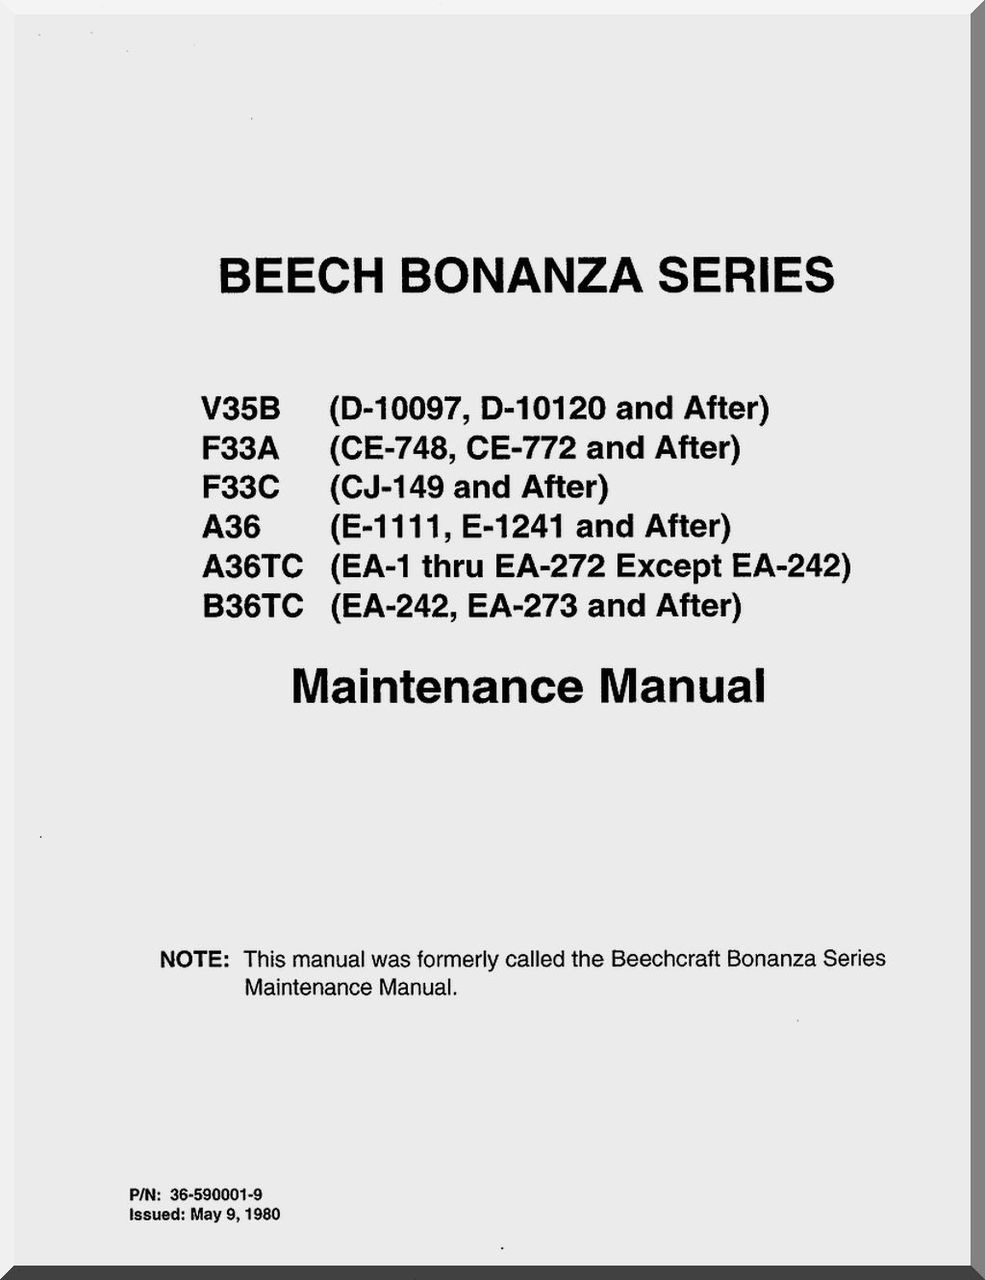 F33A B36TC & G36 Service Manual Pdf CD ! Beechcraft Bonanza V35B A36/TC F33C 